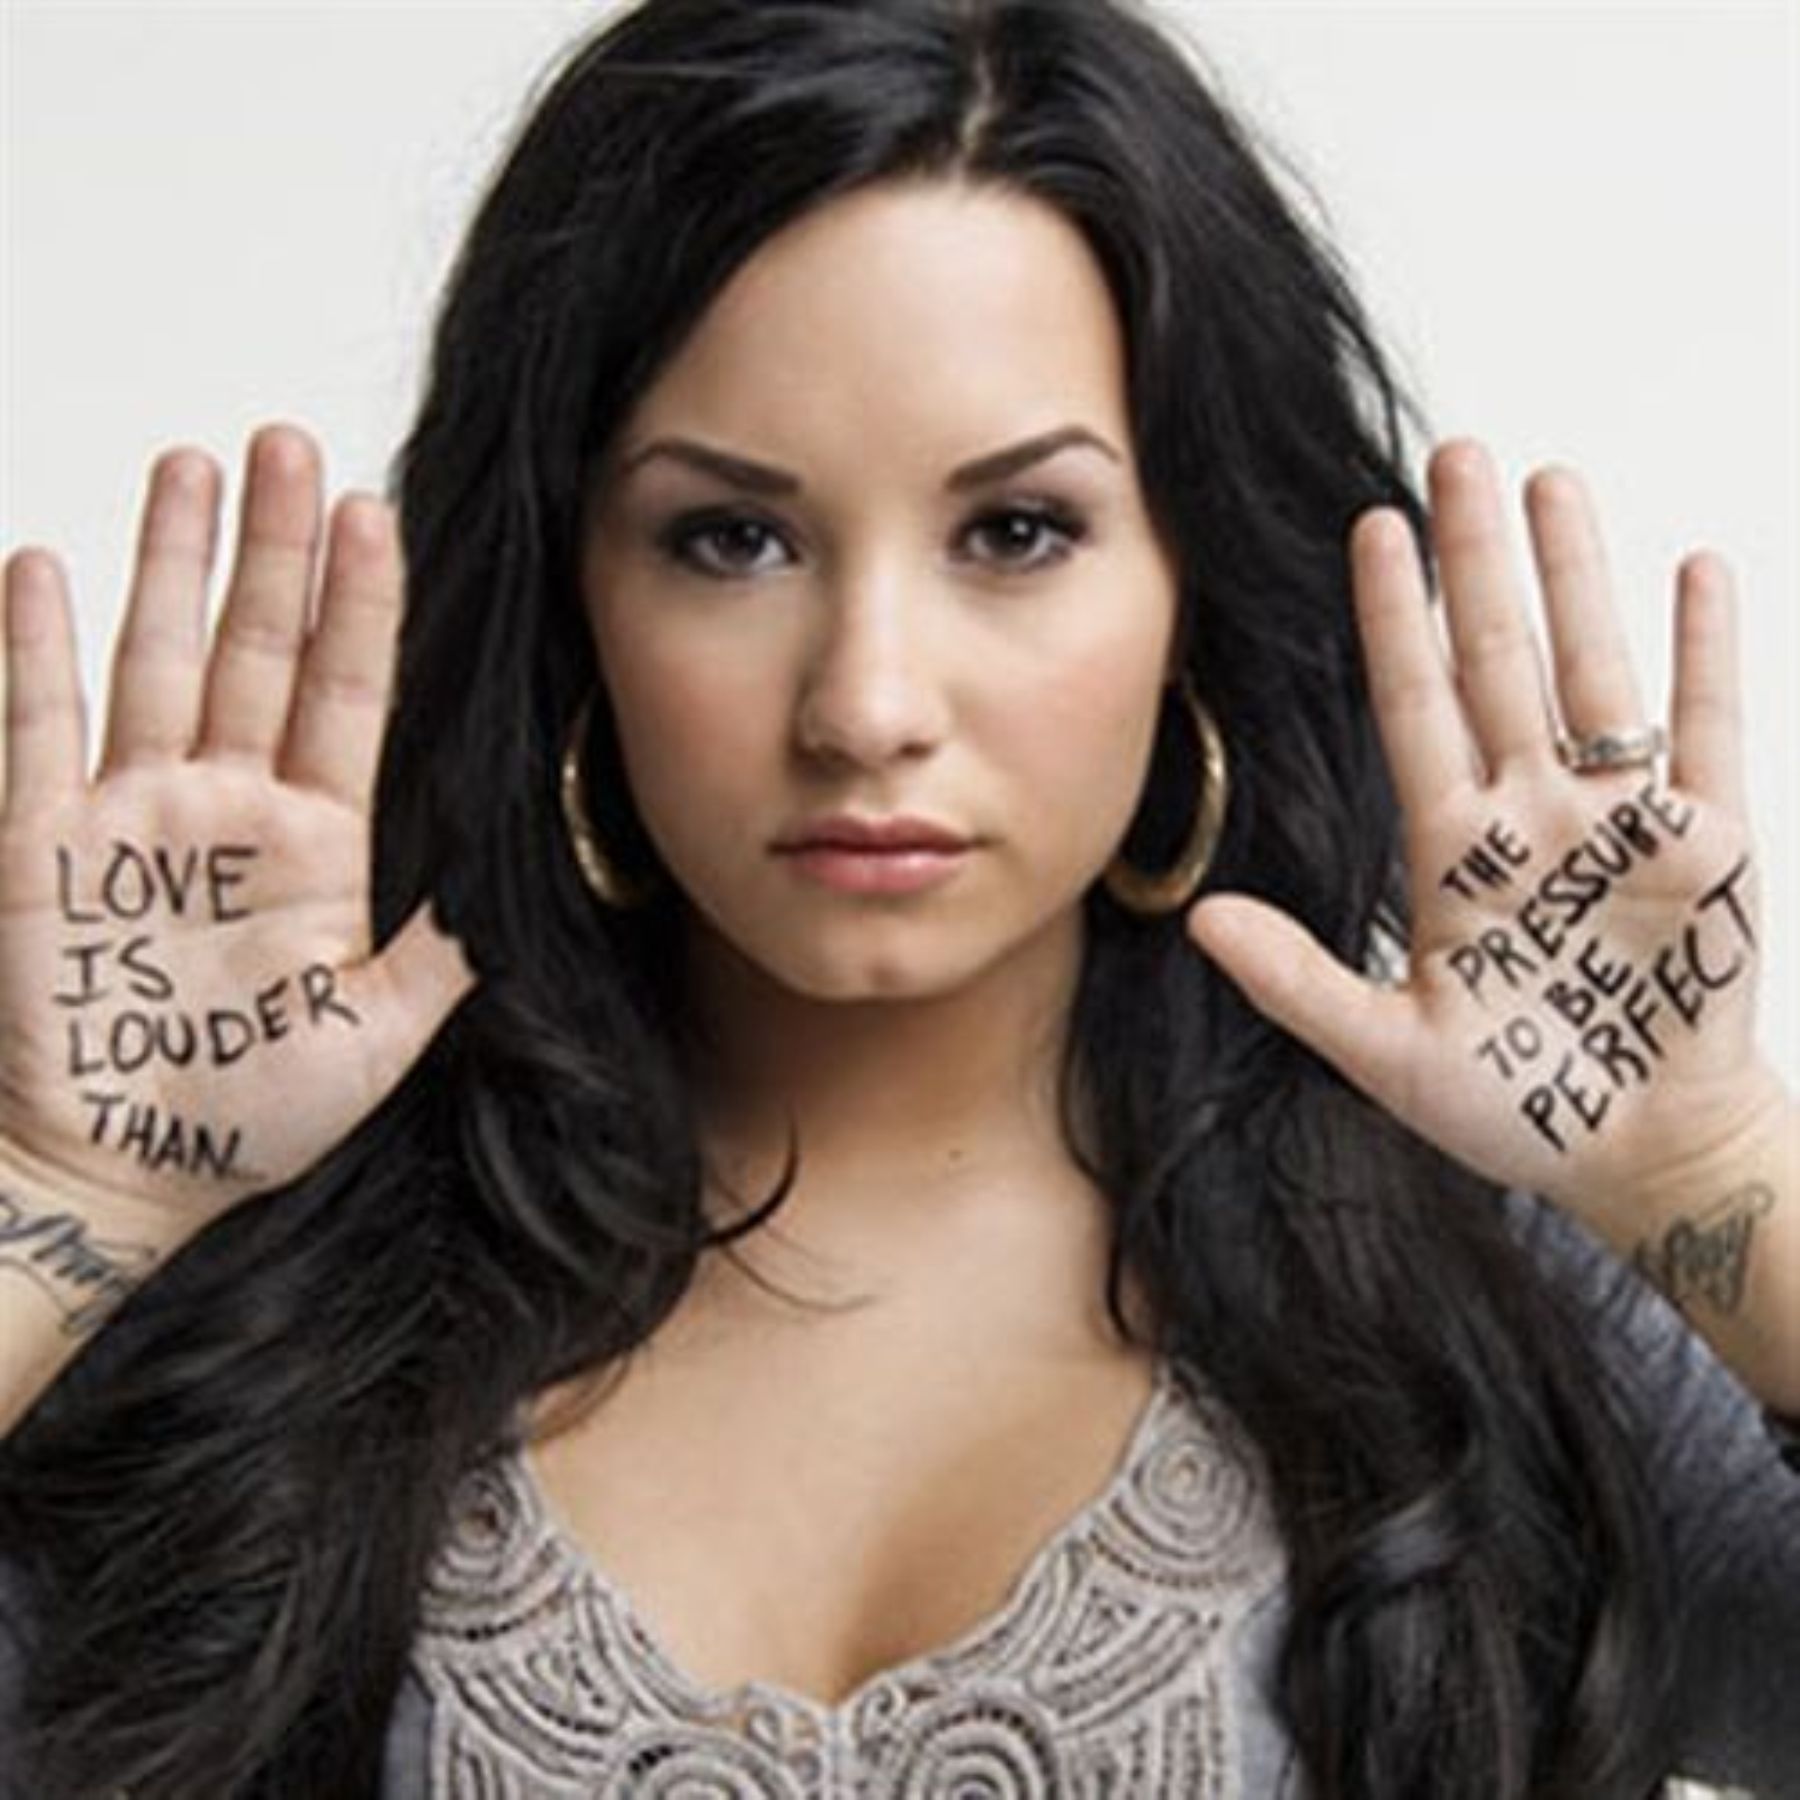 Demi Lovato inicia campaña para ayudar a los jóvenes que atraviesan "periodo oscuro". (foto Seventeen)